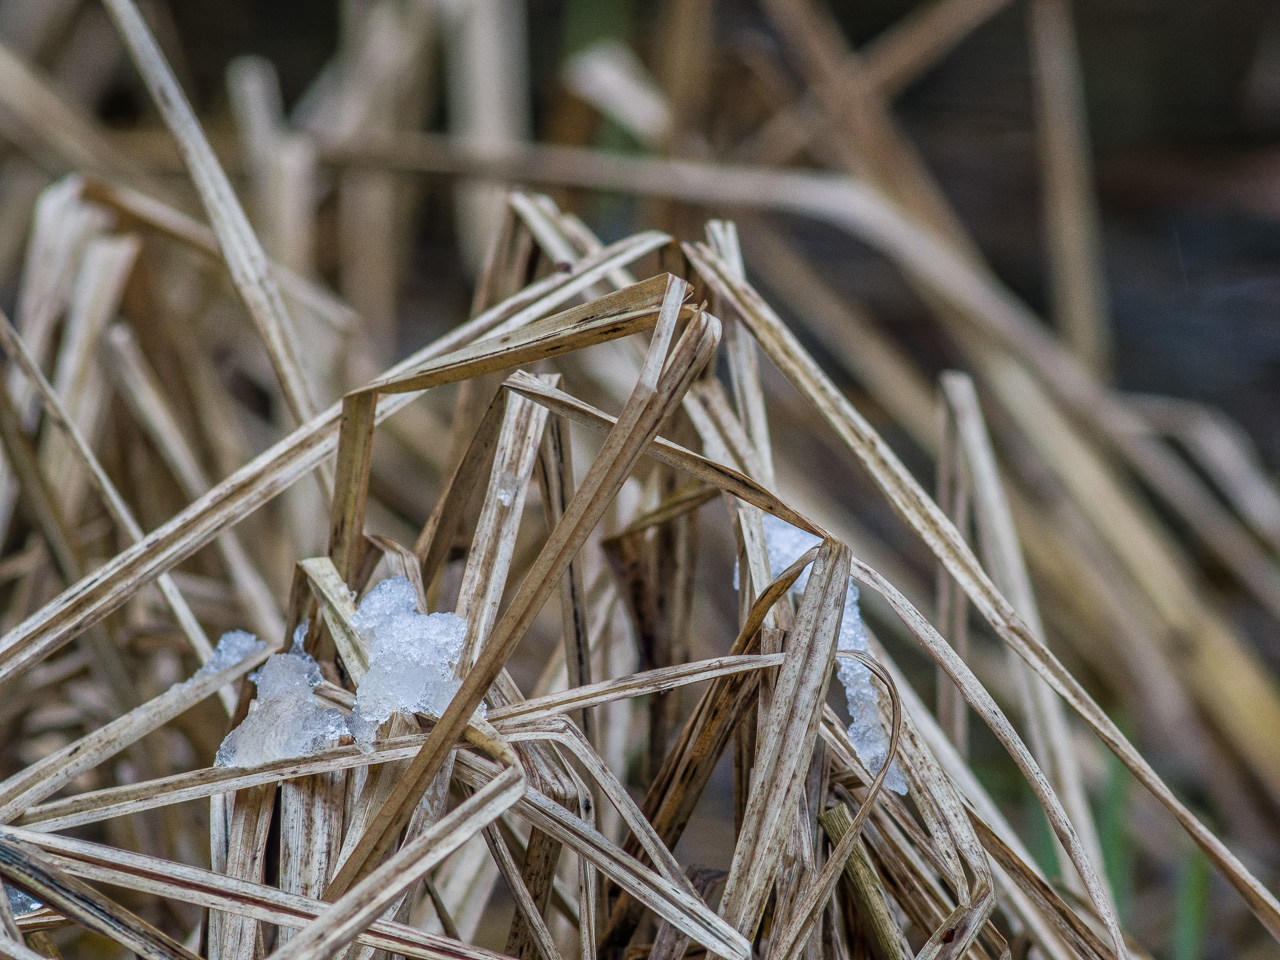 Viele trockene Schilfgräser in einer Pfütze, mit etwas Schnee bedeckt